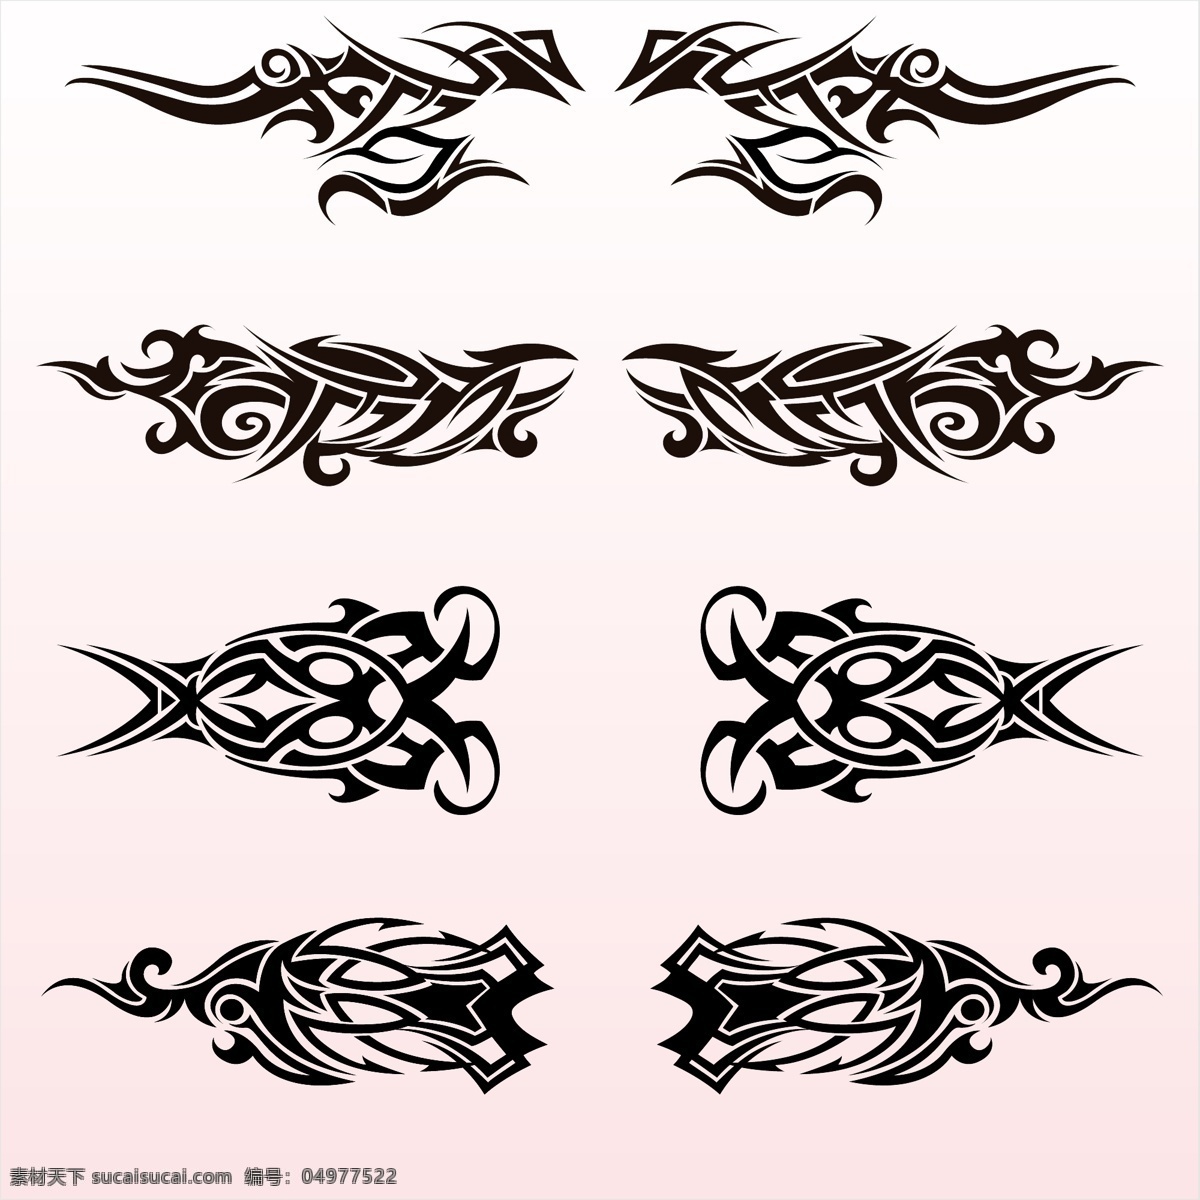 部落艺术纹身 抽象的 翅膀 向量 集合 抽象 边框 饰品 模板 艺术 纹身 黑色 最新矢量素材 白色